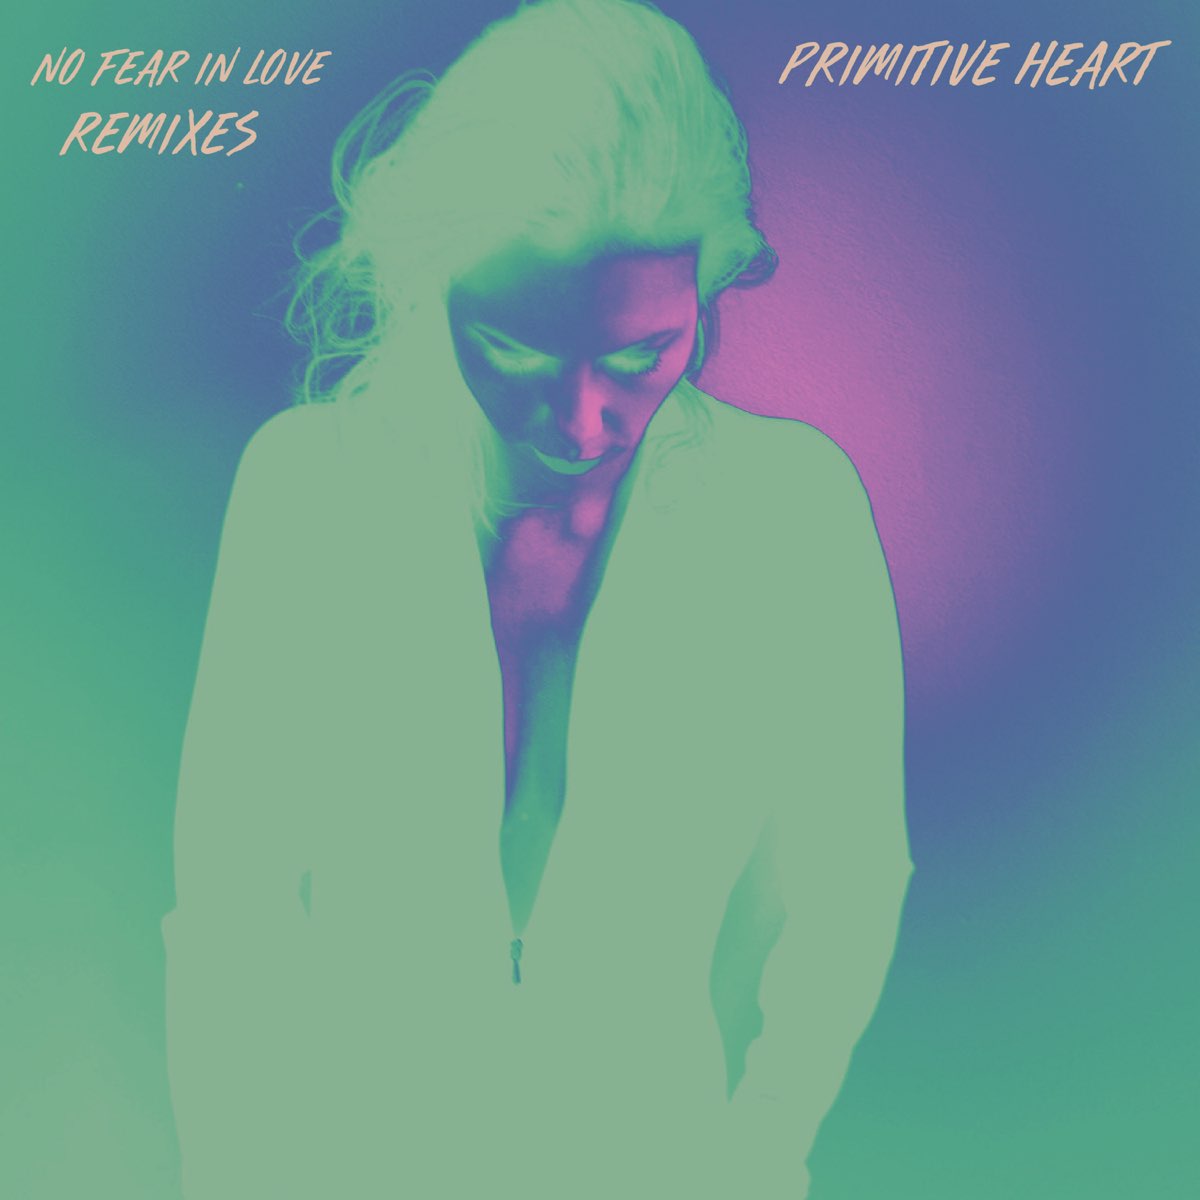 Your love remixes. Primitive Hearts.